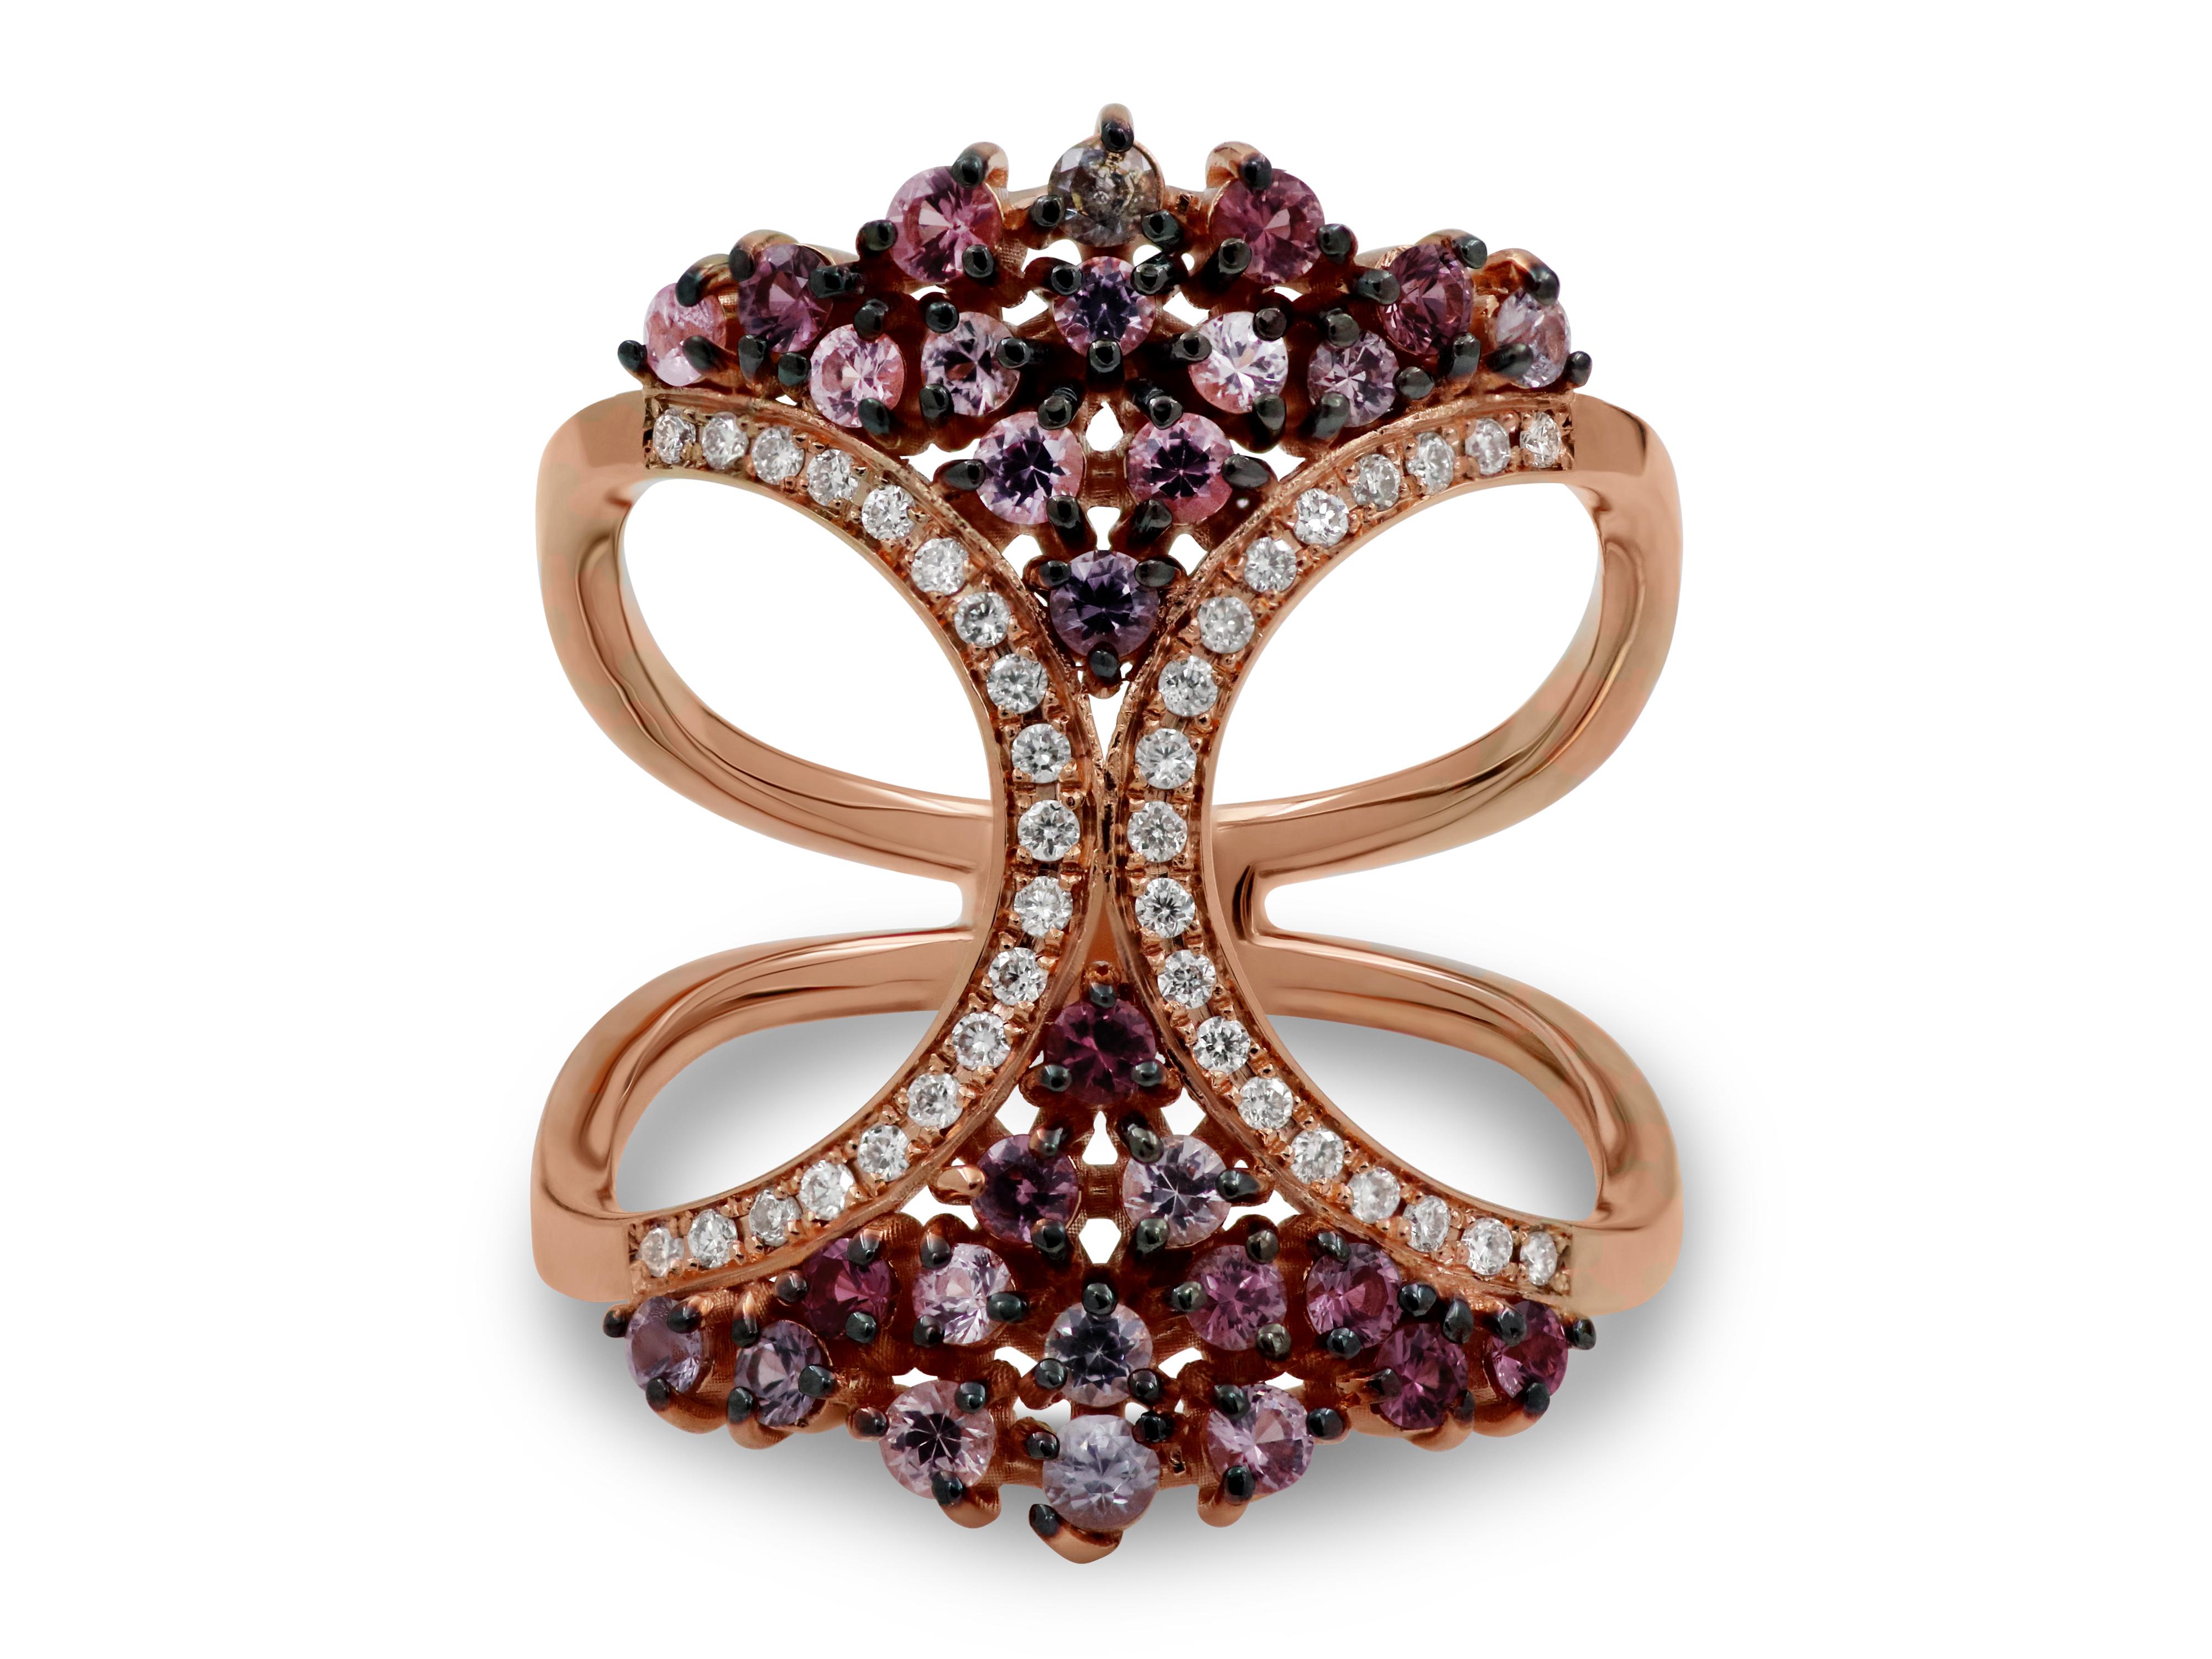 Exquisiter Ring aus 18 Karat Roségold mit 0,76 Karat Spinell und 0,16 Karat Diamanten im Brillantschliff.